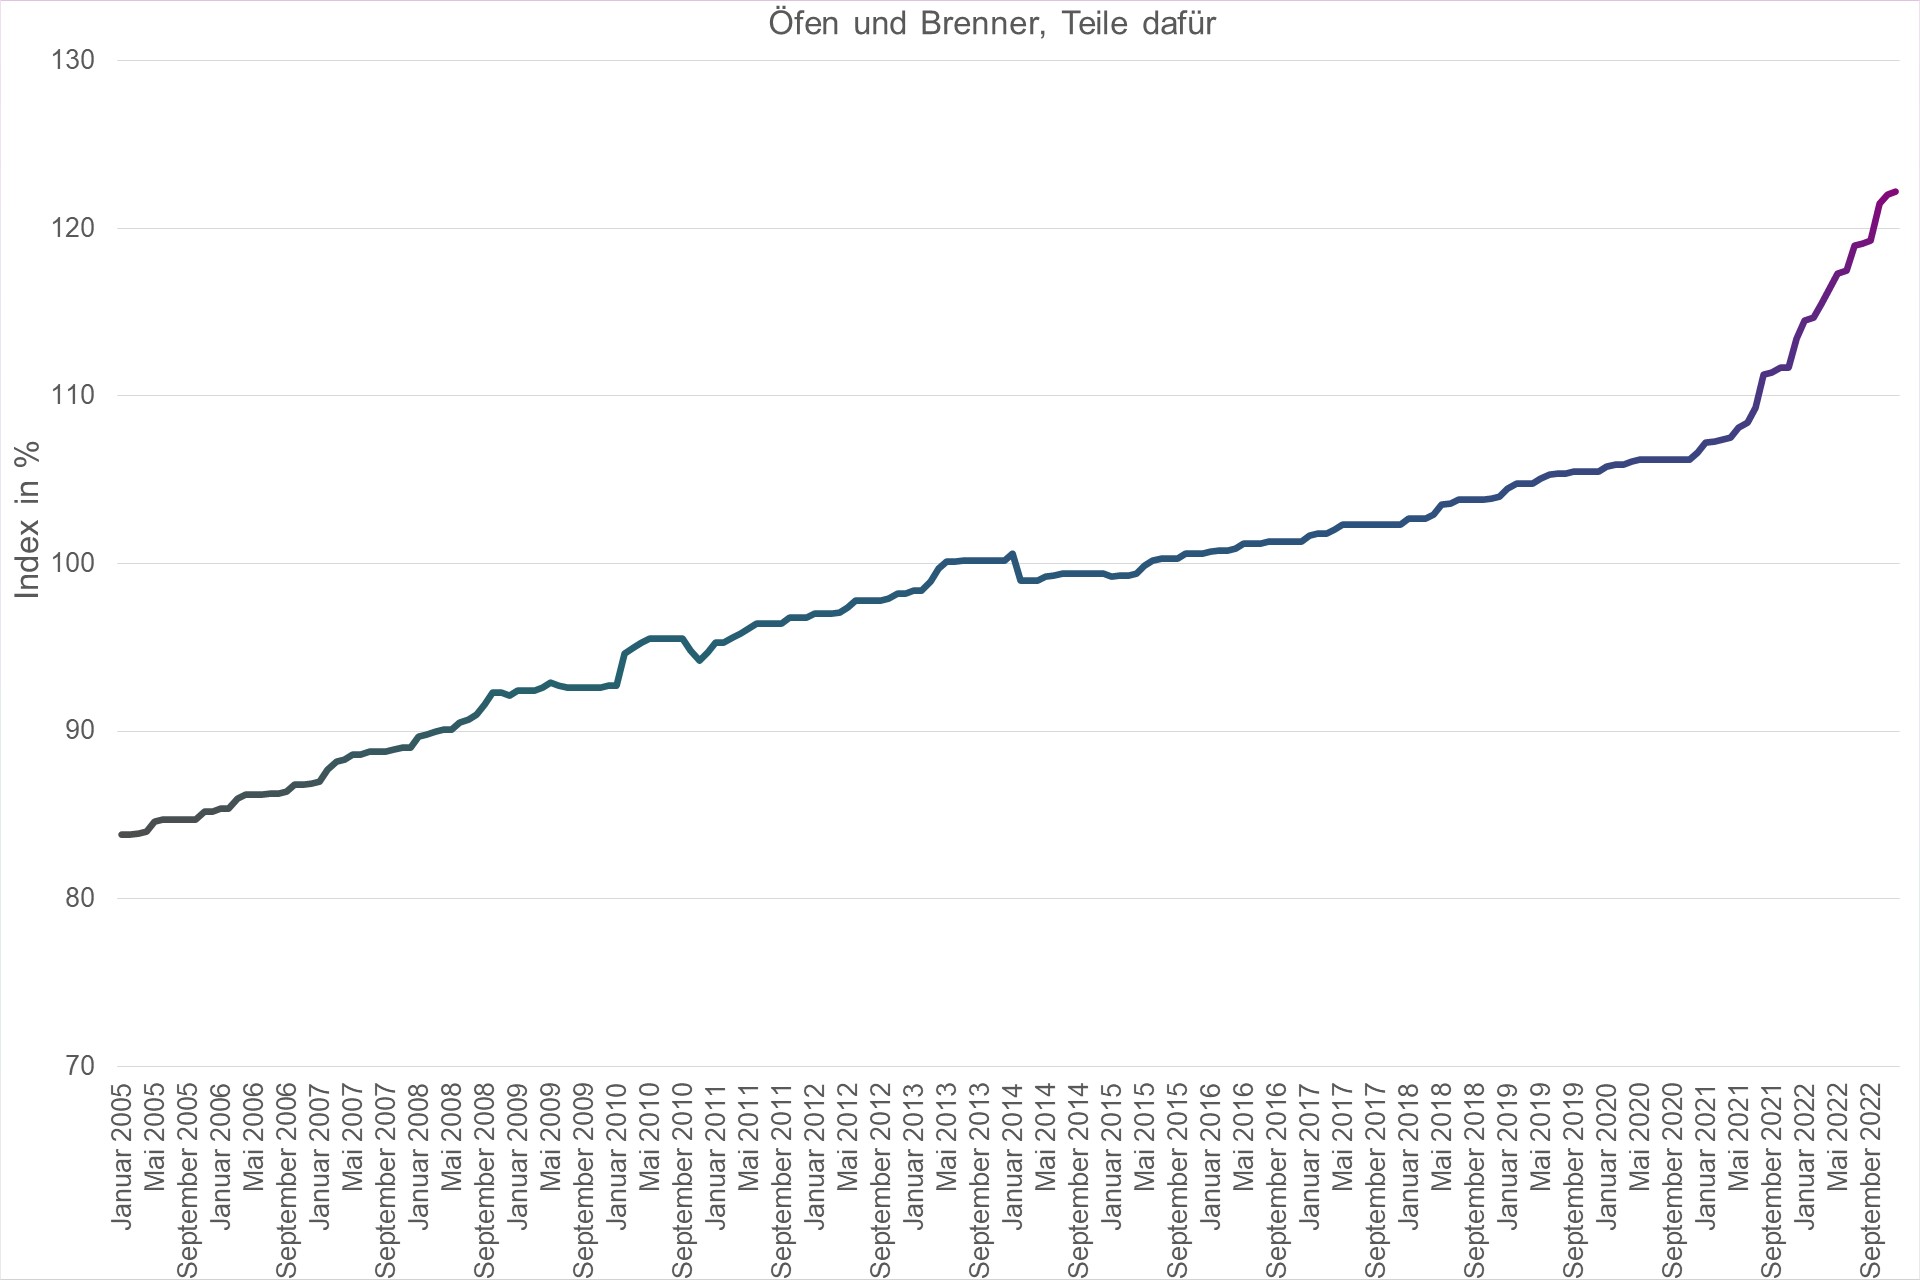 Grafik Preisindex Ouml;fen und Brenner, Teile dafür